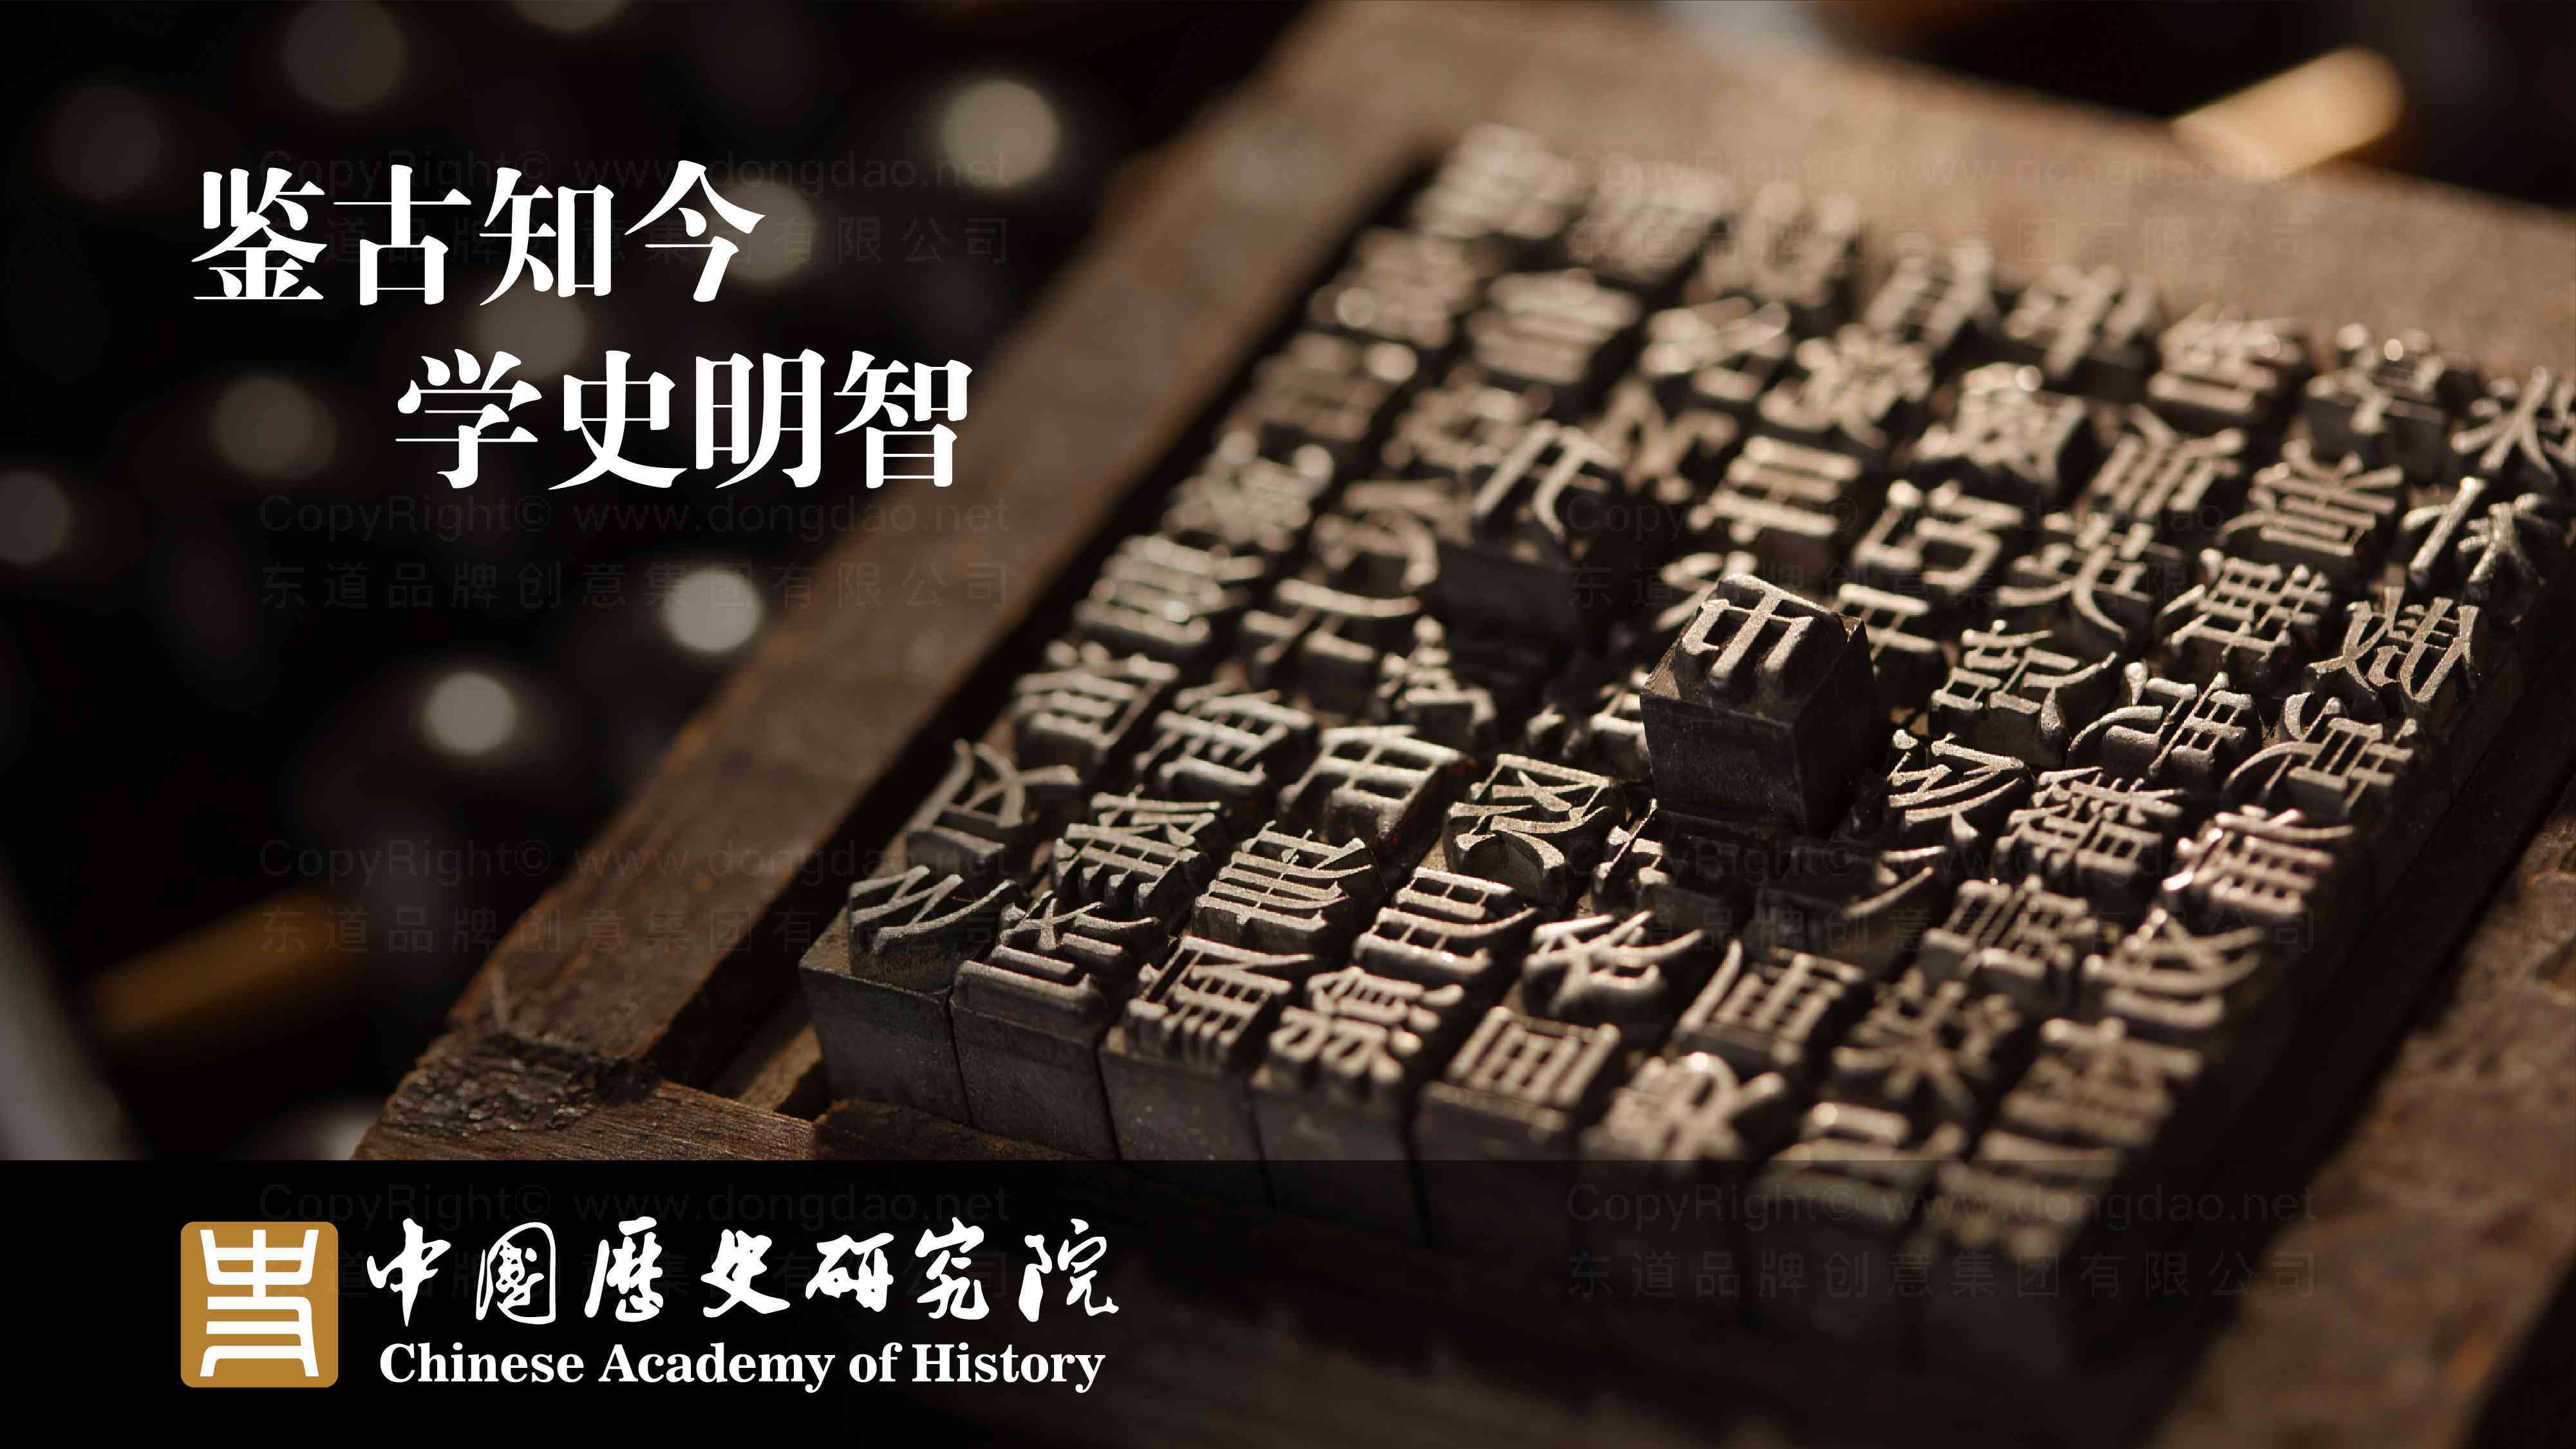 中国历史研究院品牌logo设计图片素材_2